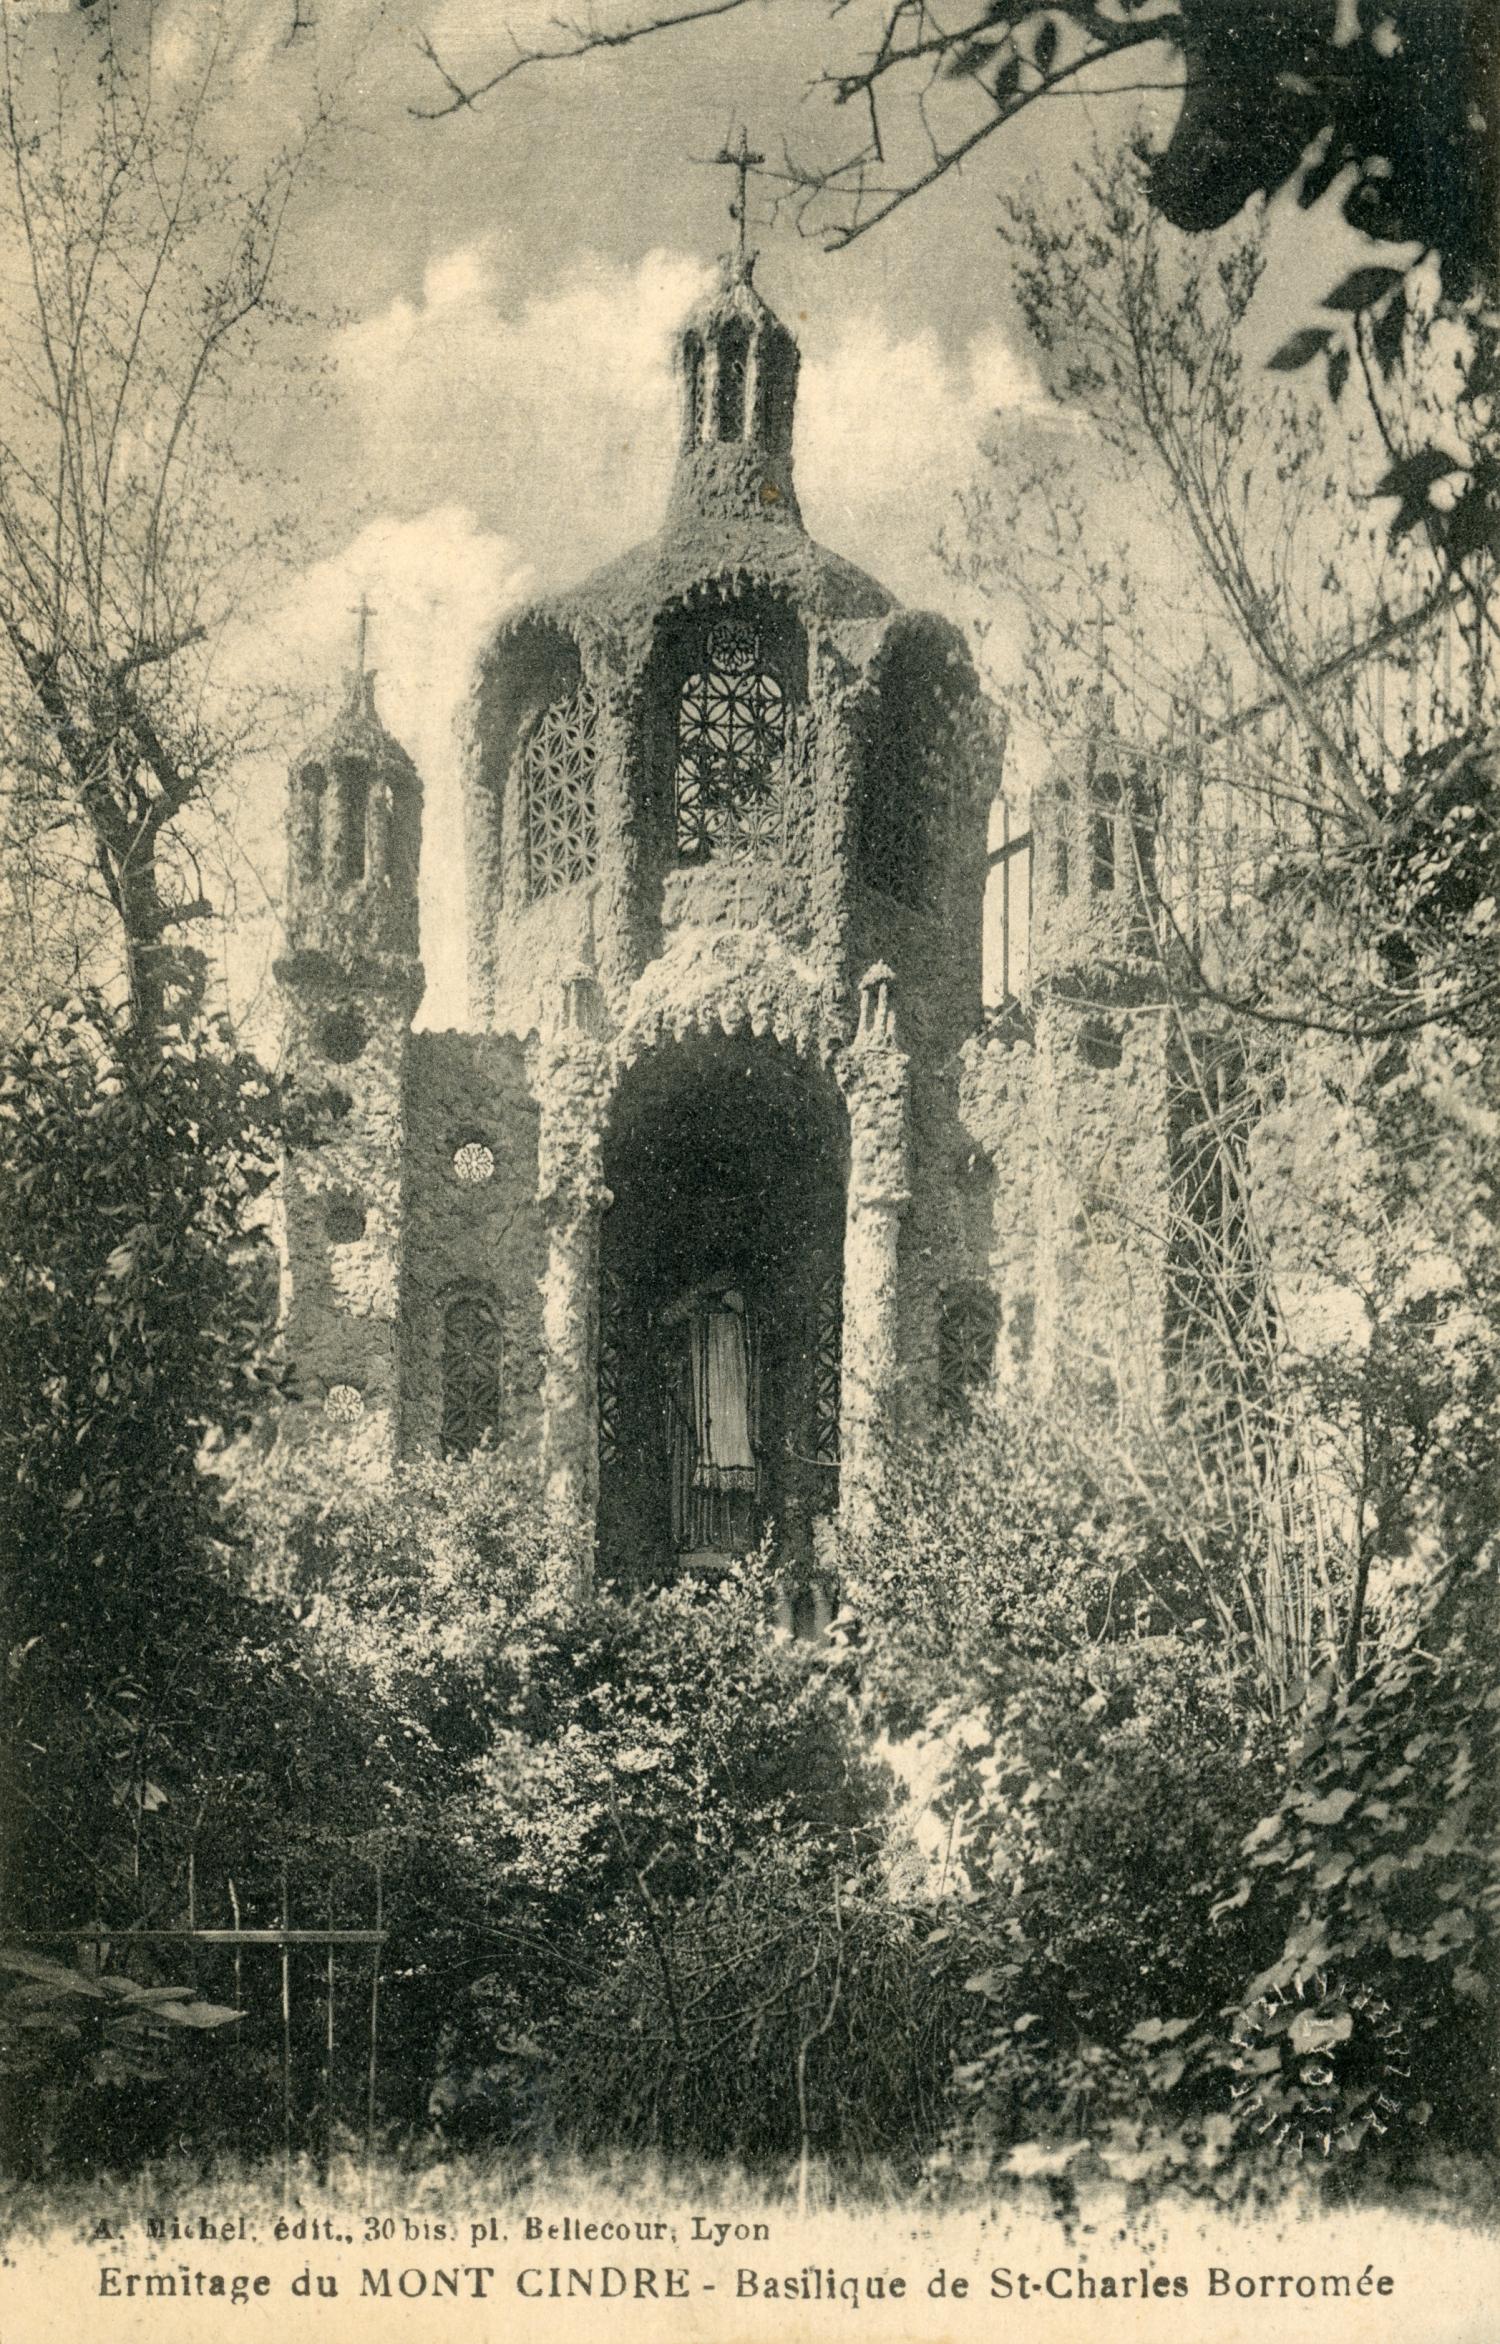 Ermitage du Mont Cindre. - Basilique de St-Charles Borromée